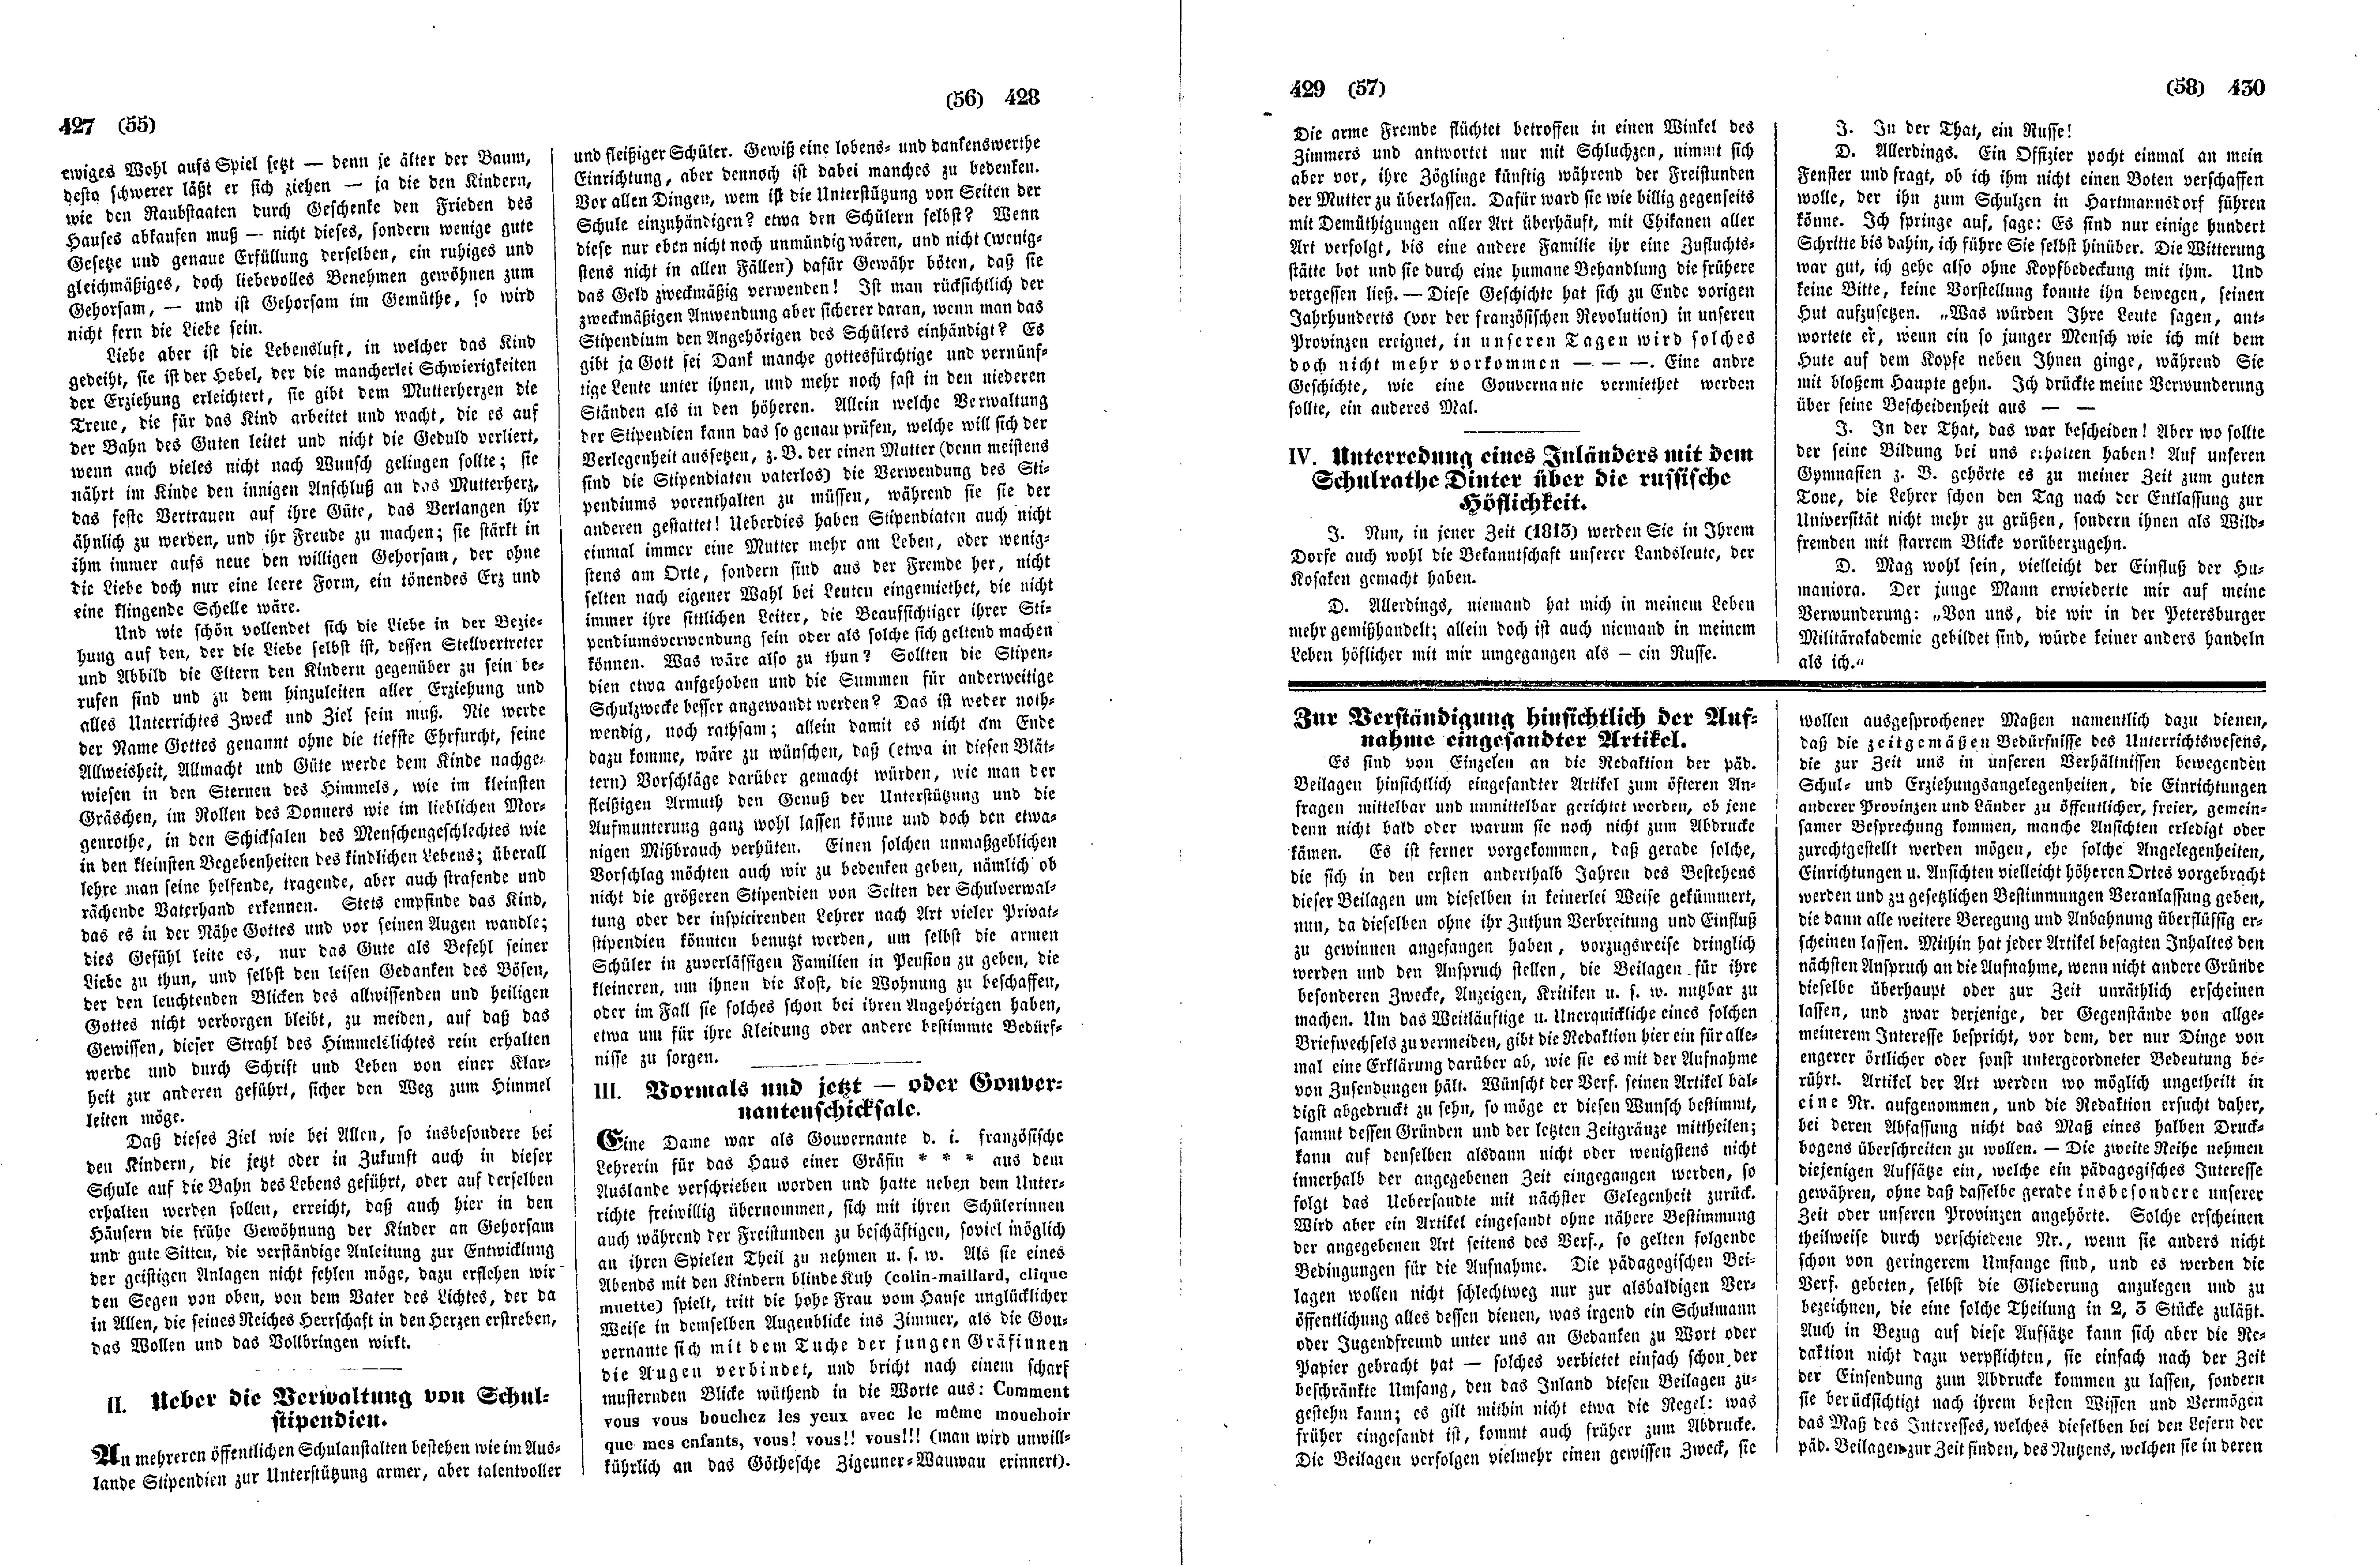 Das Inland [12] (1847) | 112. (427-430) Haupttext